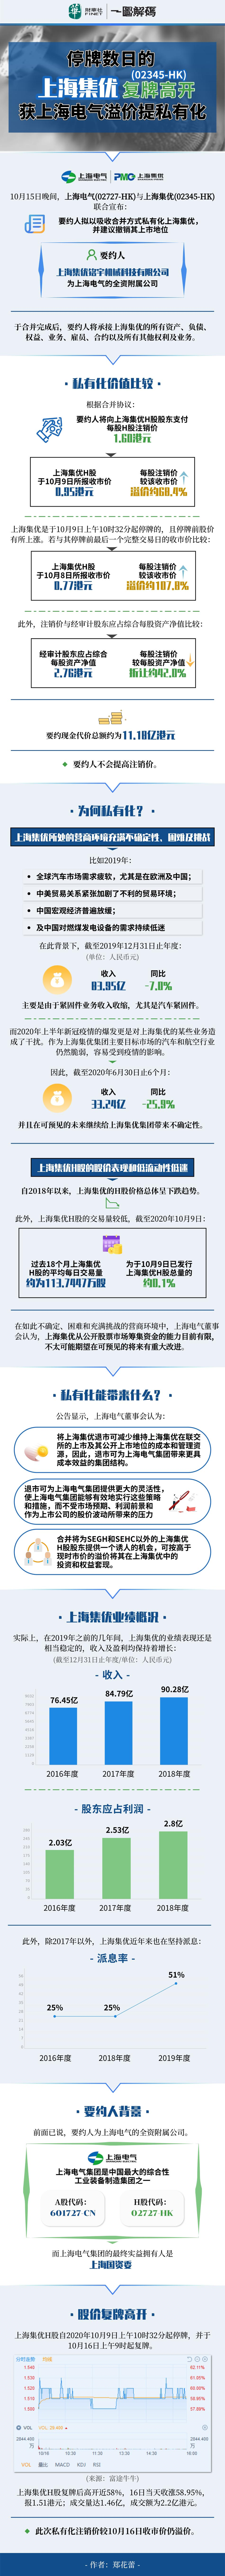 一图解码：停牌数日的上海集优复牌高开 获上海电气溢价提私有化